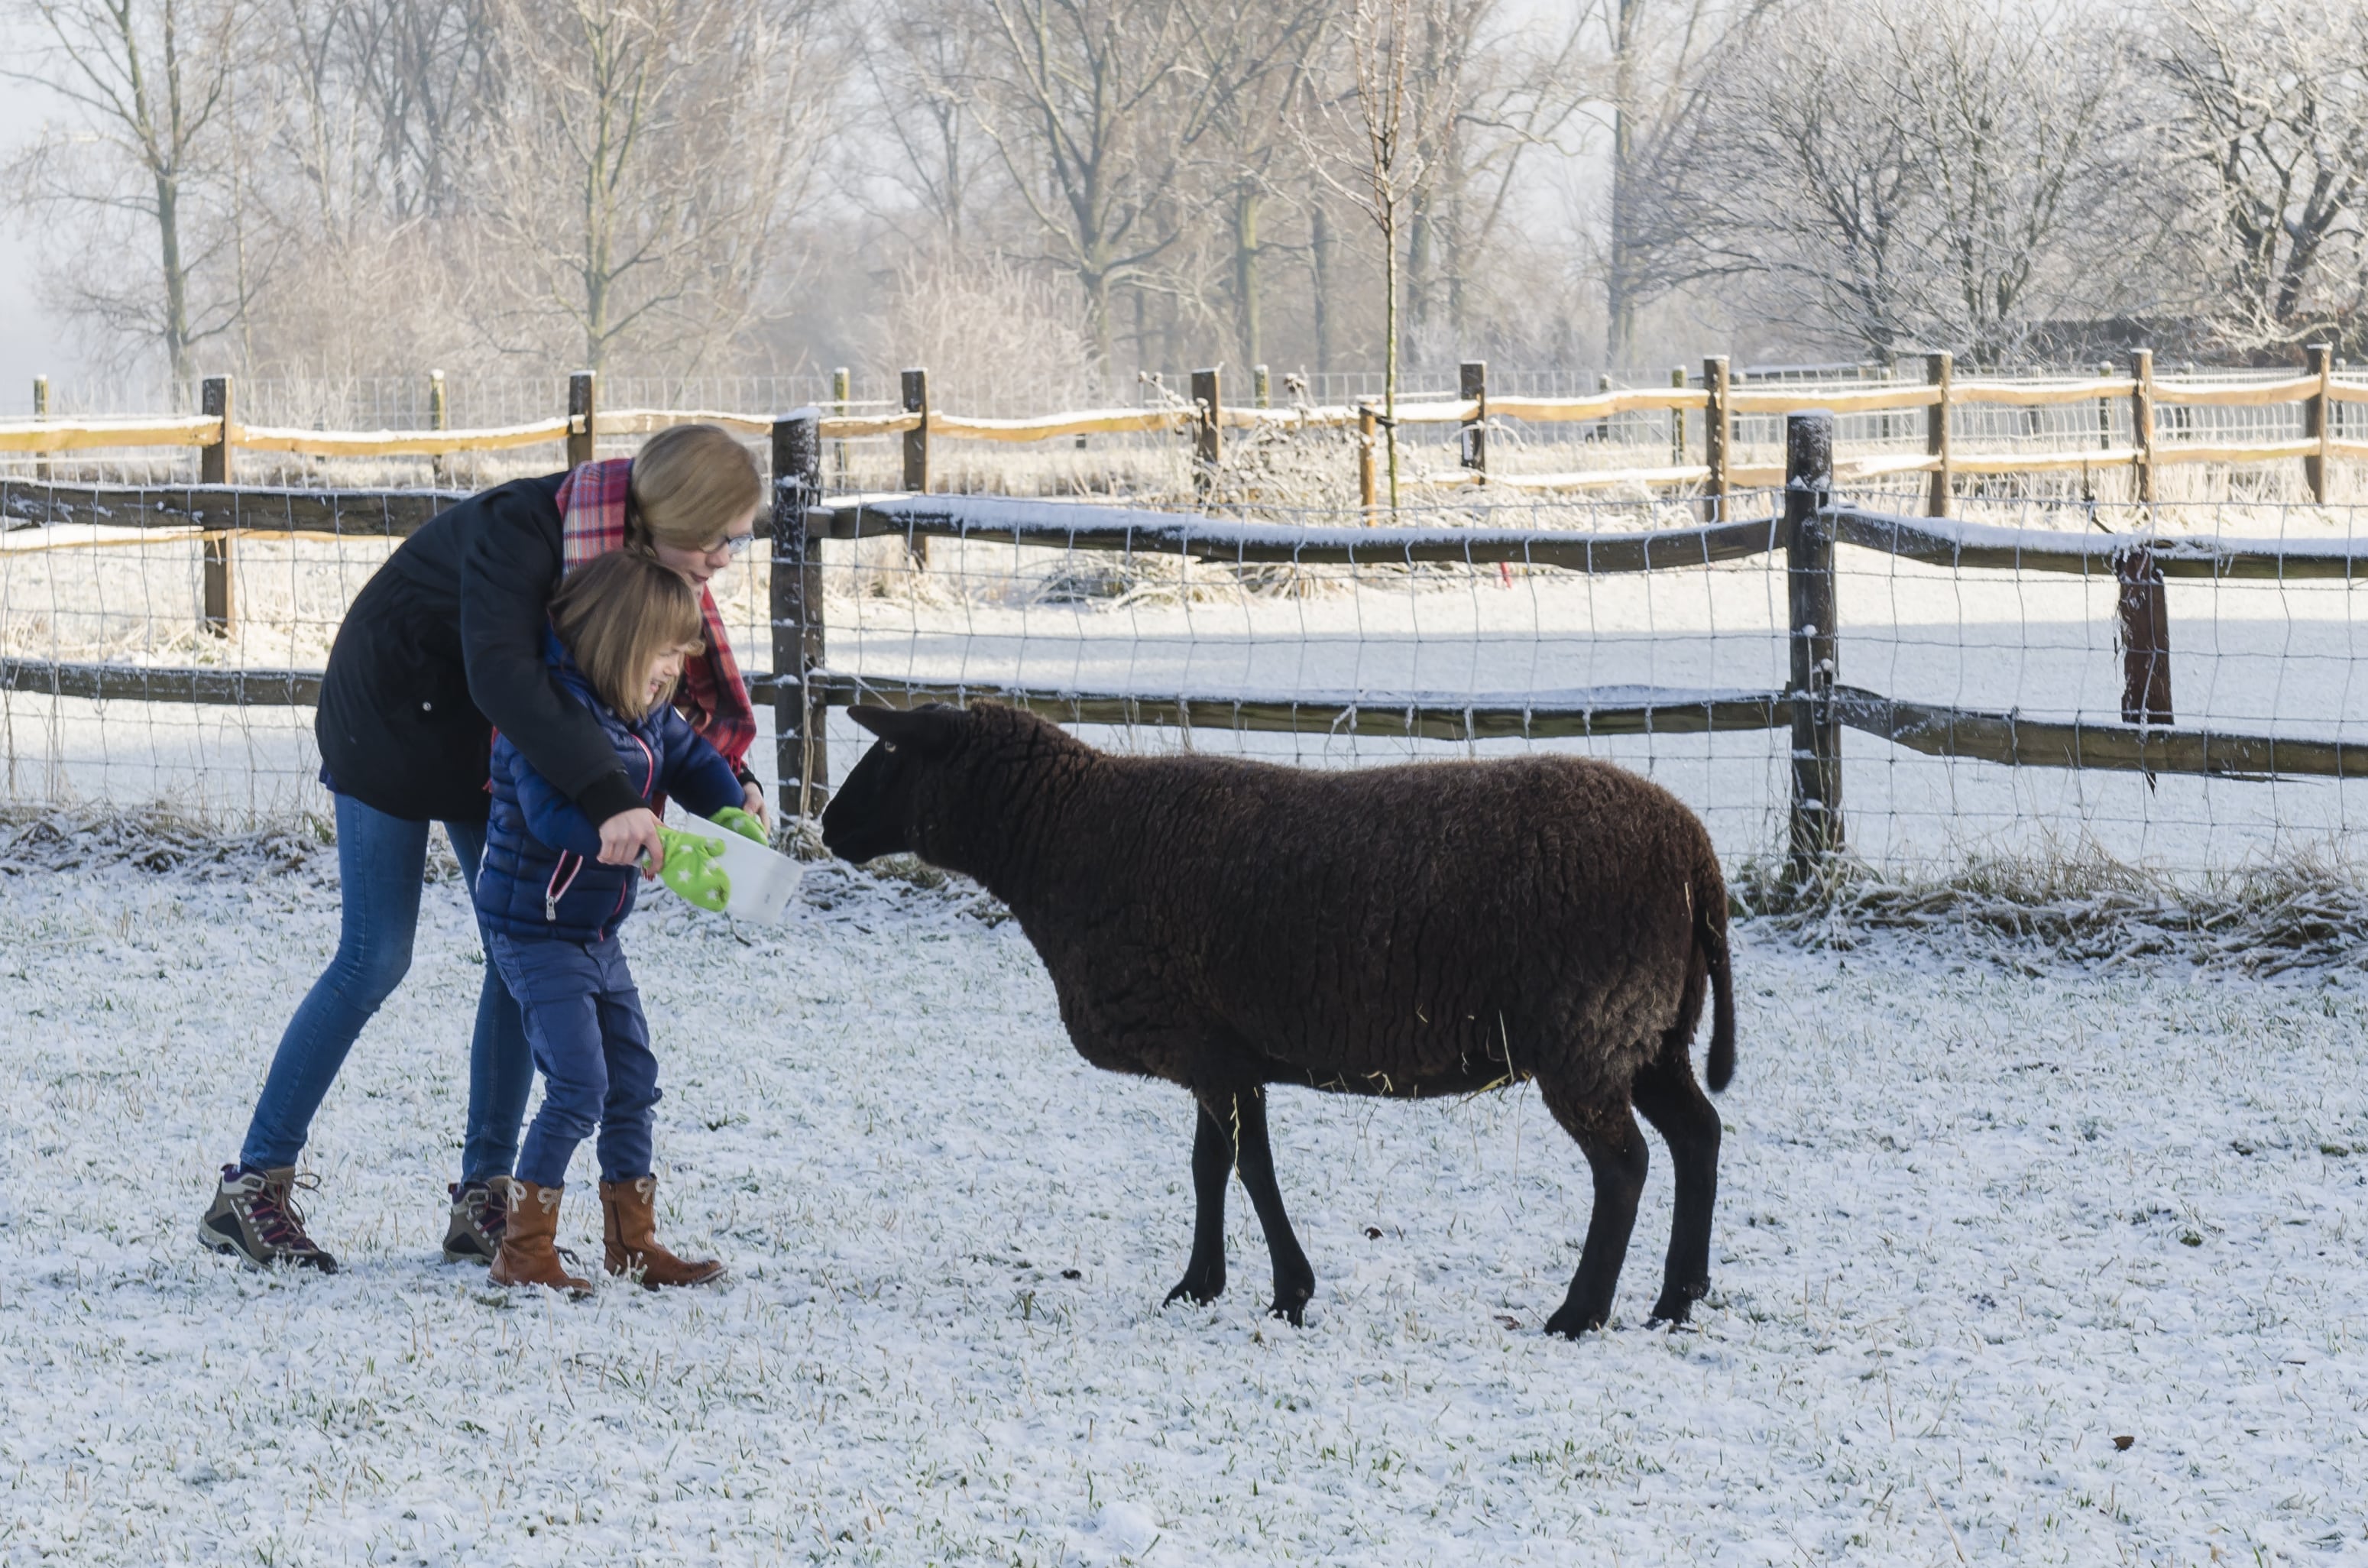 Eyndevelde vakantiewoningen Vlaamse Ardennen weekend weg met de familie in de sneeuw